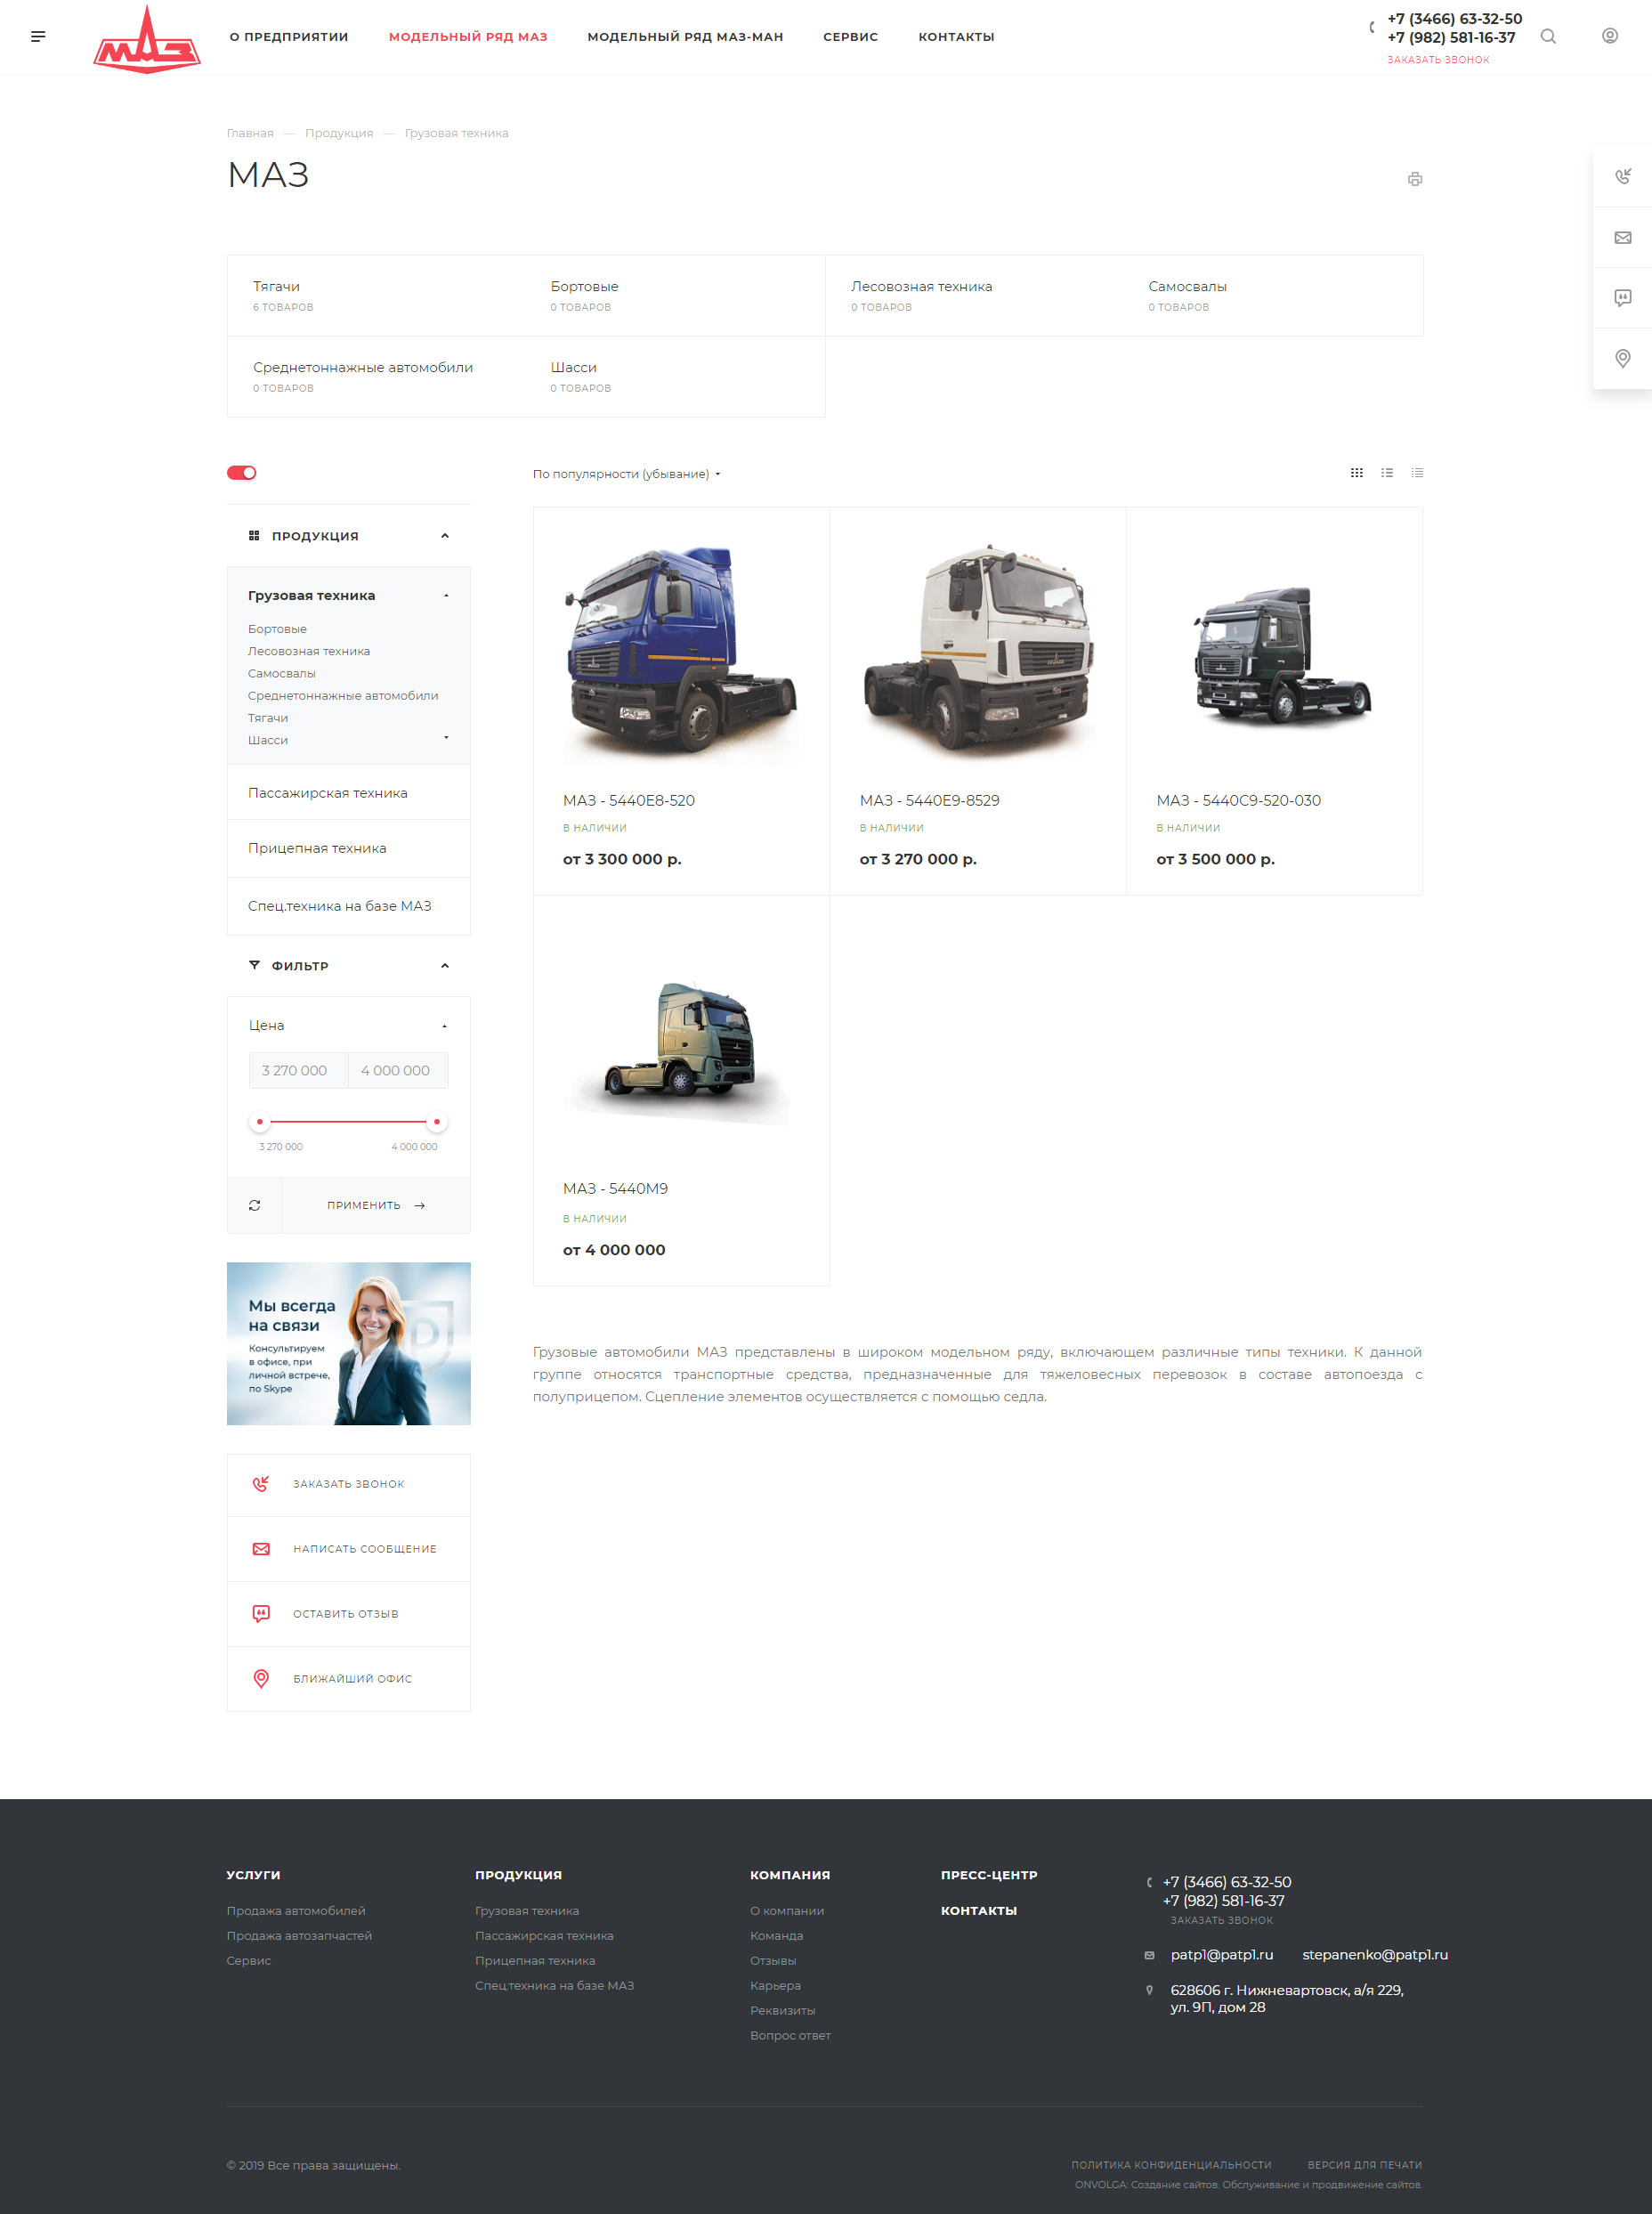 корпоративный сайт официального дилера минского автомобильного завода